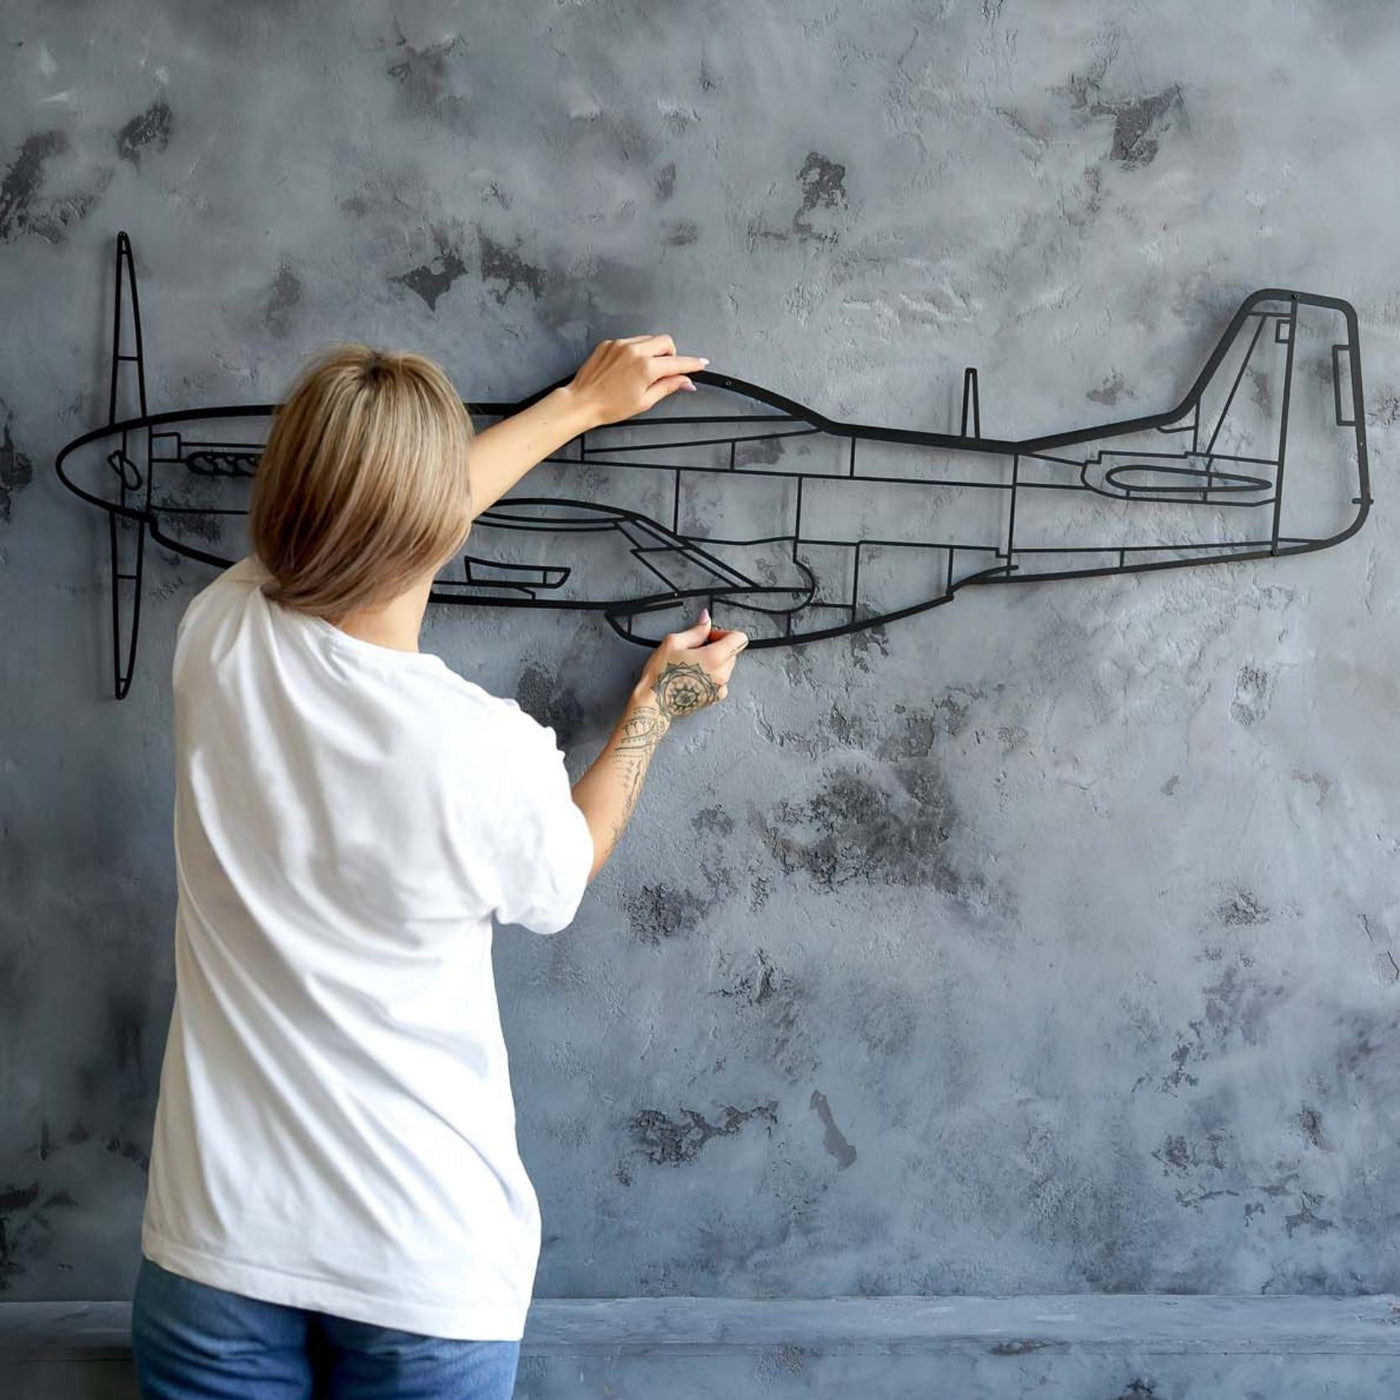 VF-31J Angle Silhouette Metal Wall Art